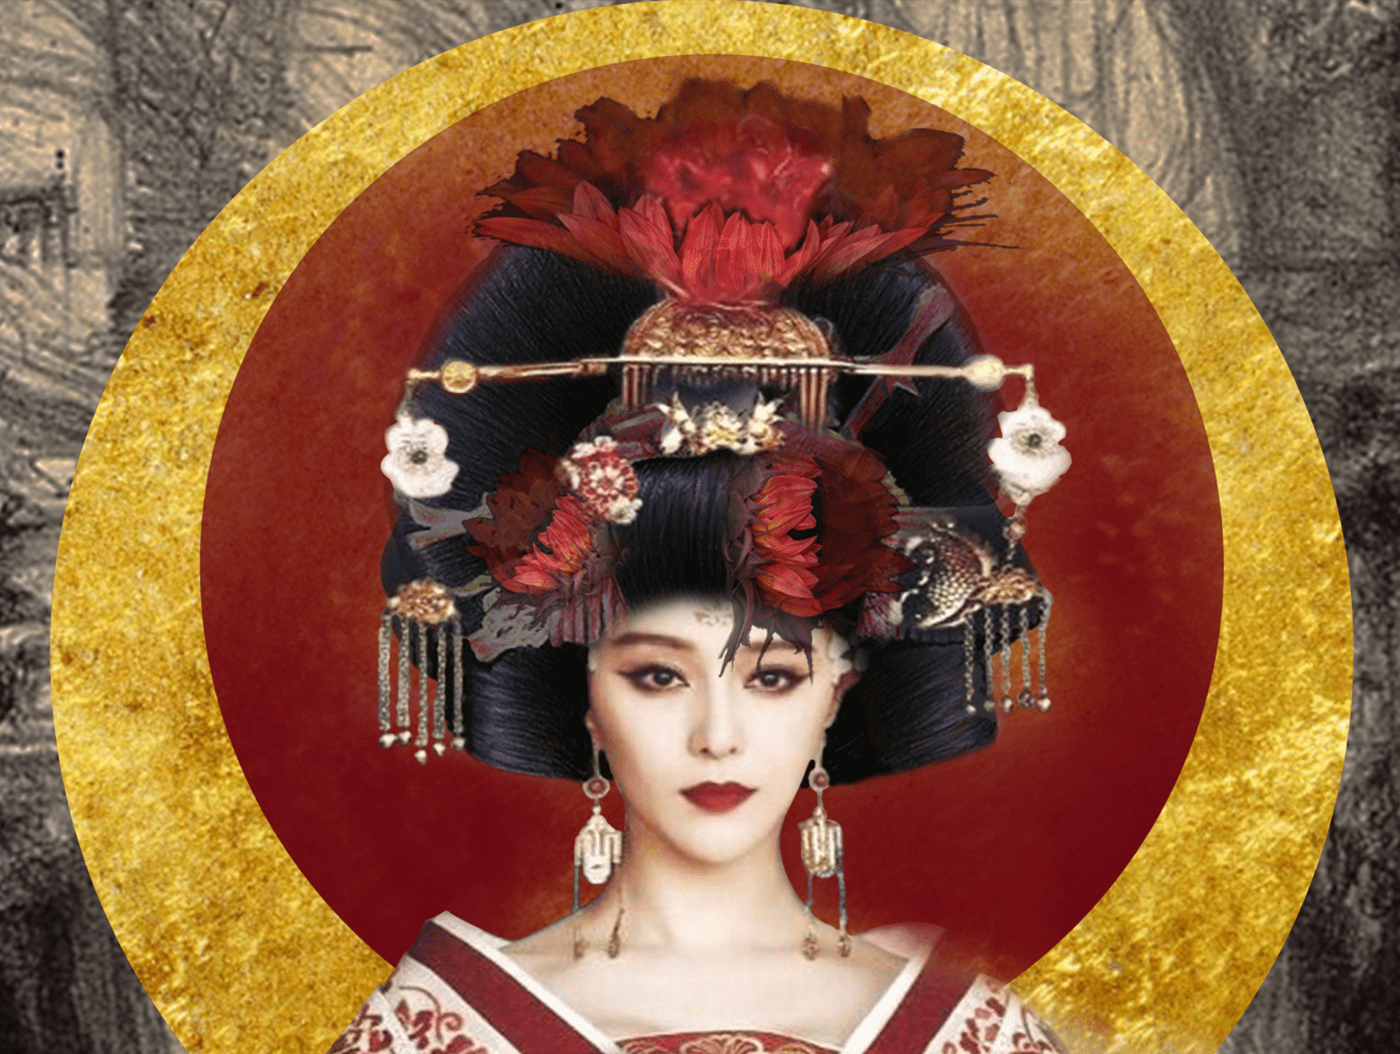 Memoirs of a Geisha Movie Poster.